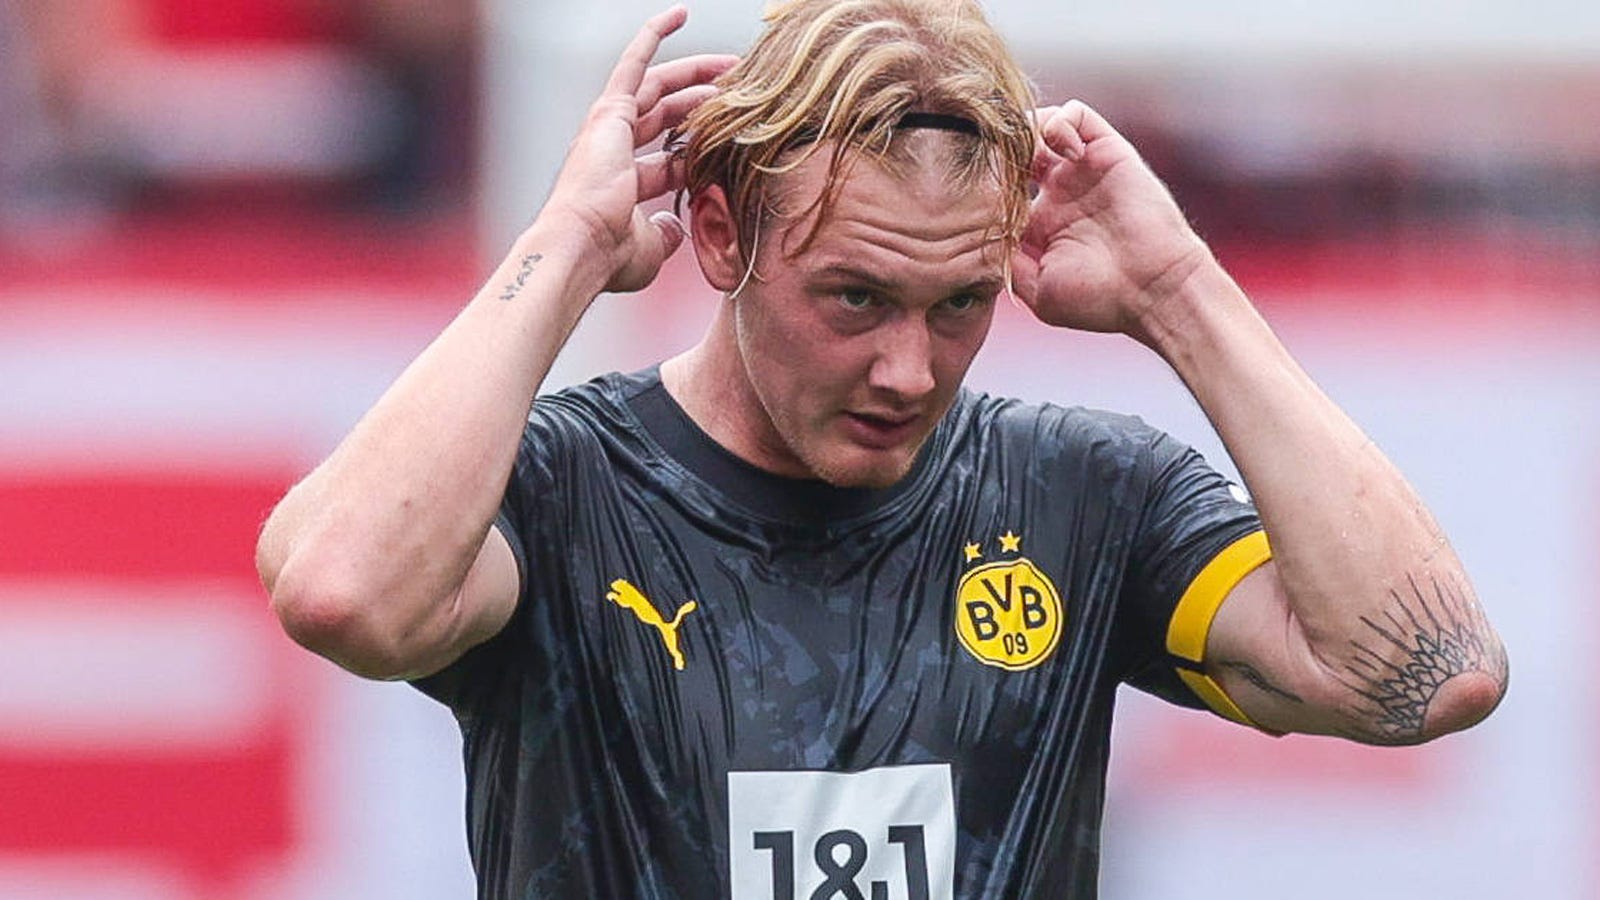 "Das Handy ist heiß wie Frittenfett": BVB löst PR-Stunt um Julian Brandt auf